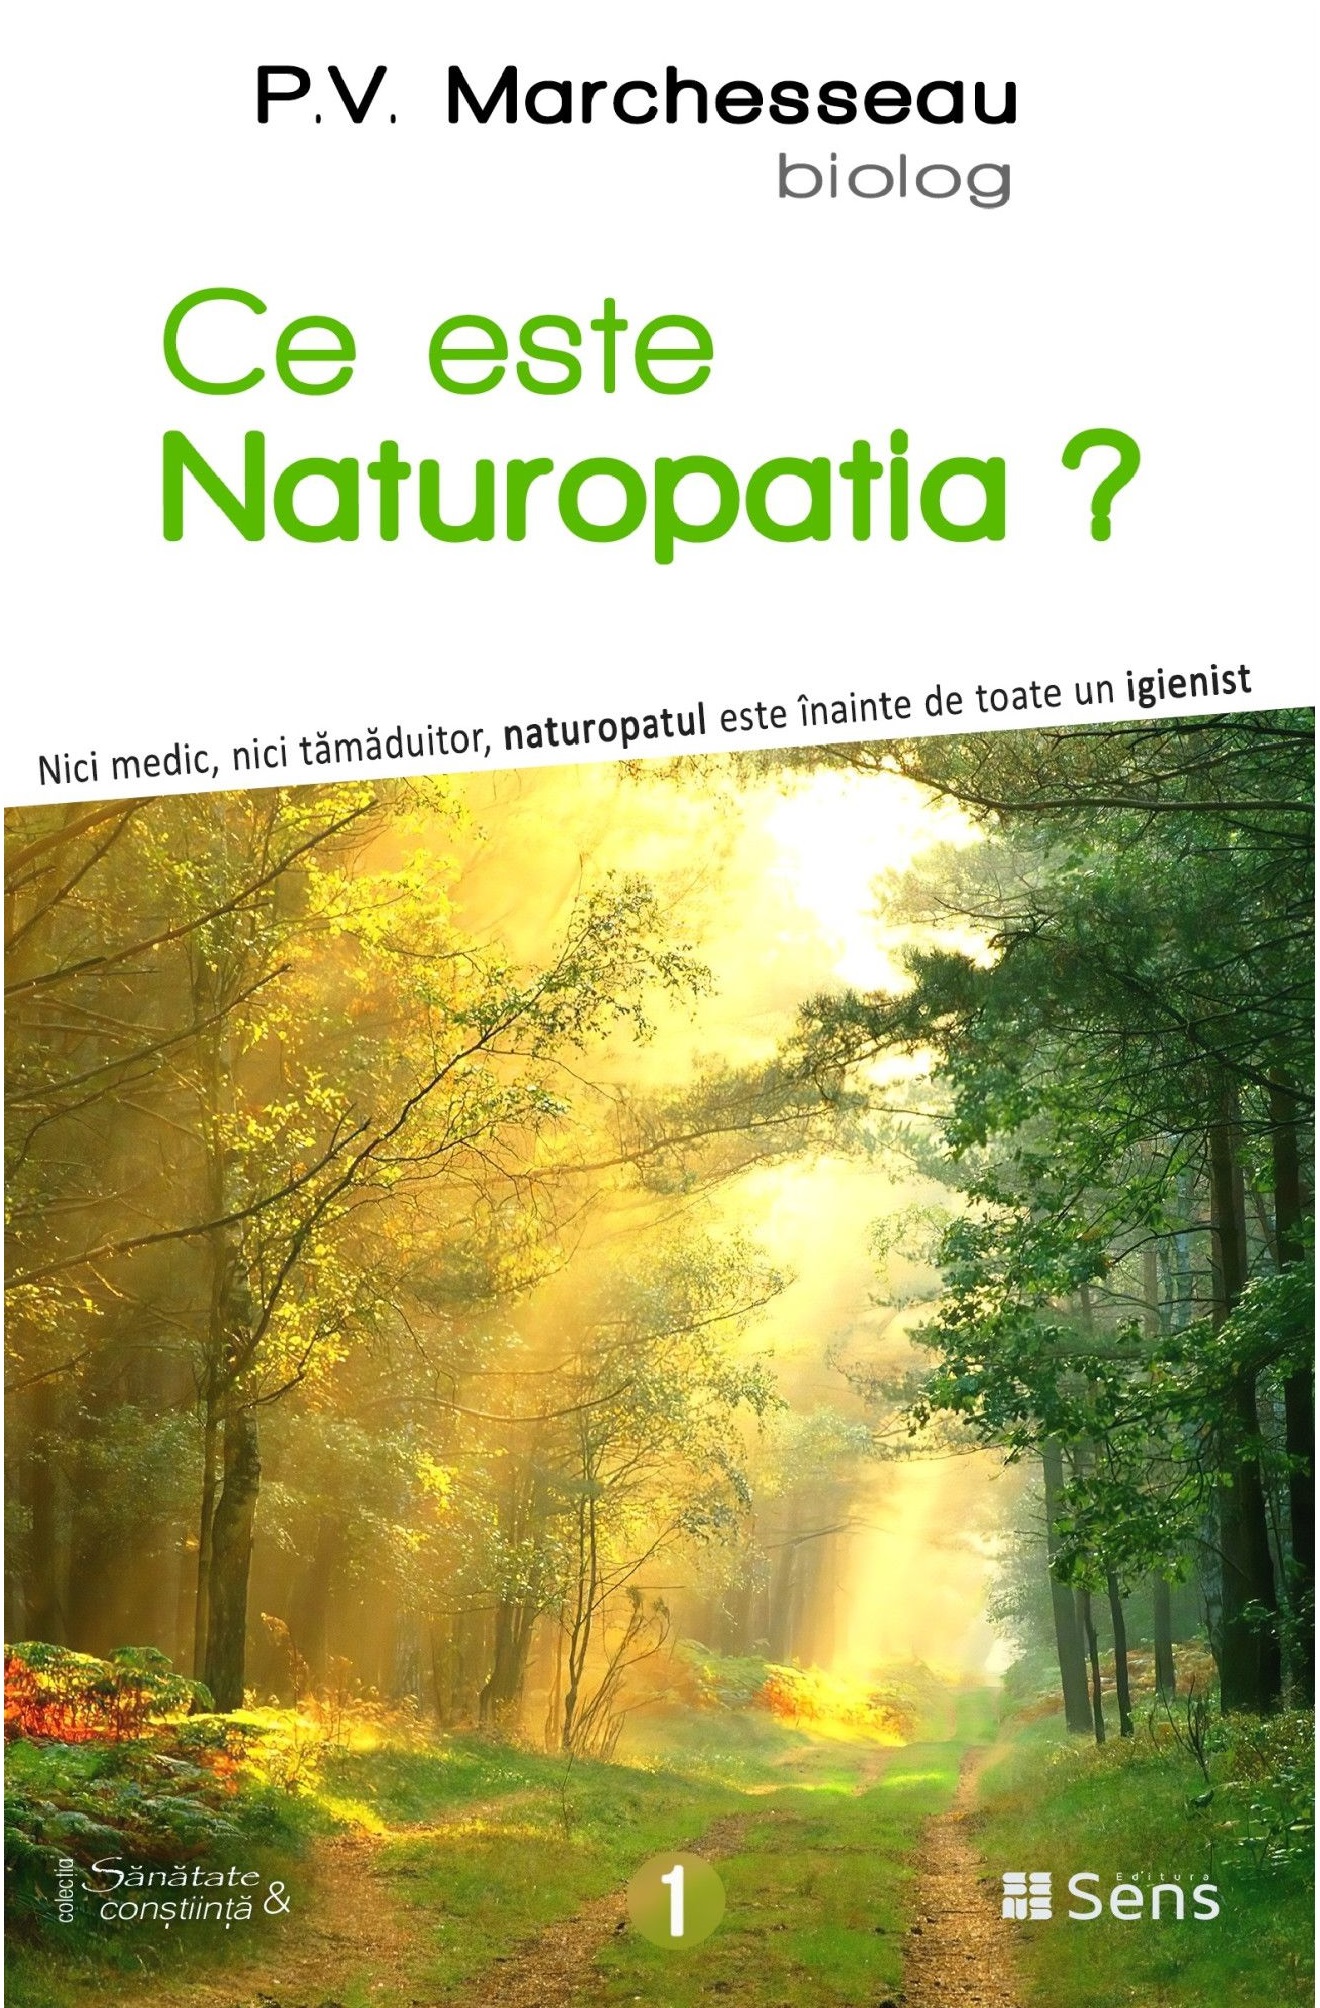 Ce este Naturopatia? | Pierre Valentin Marchesseau